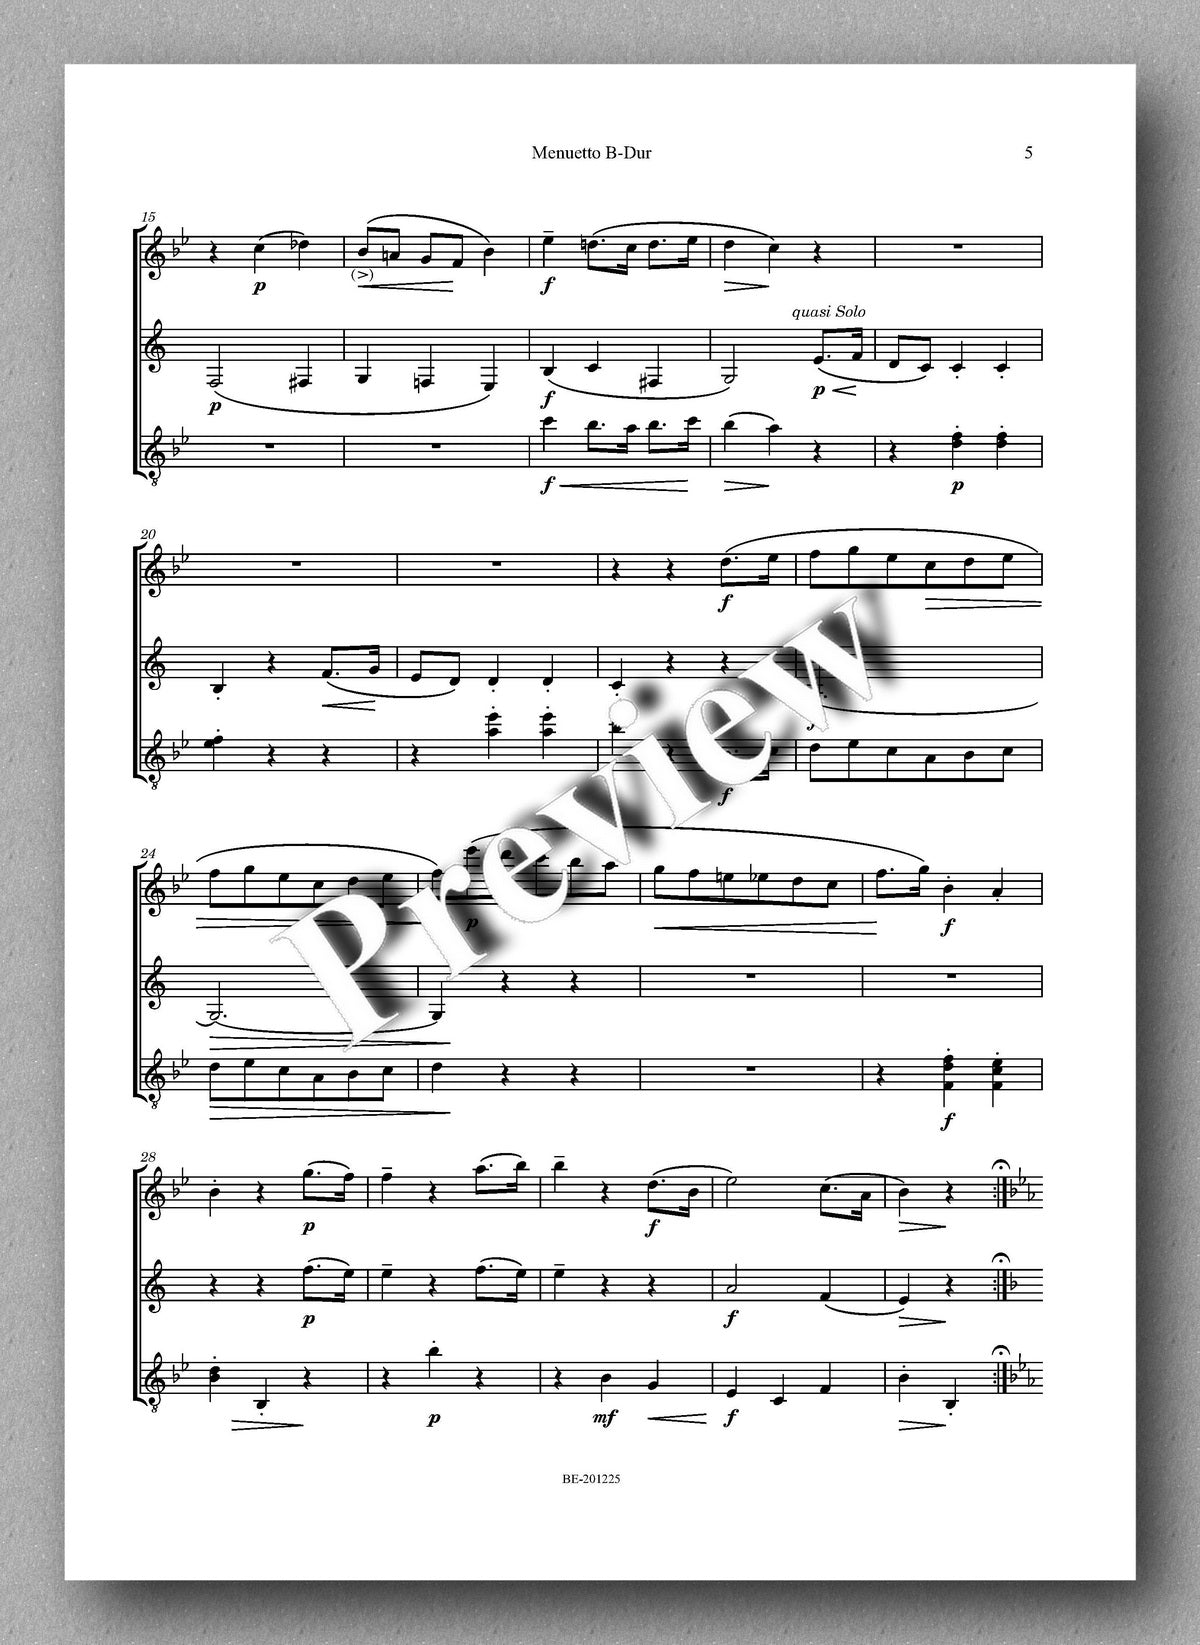 Rebay [161], Menuetto B-Dur aus der Klaviersonate in Es von Mozart - music score 2